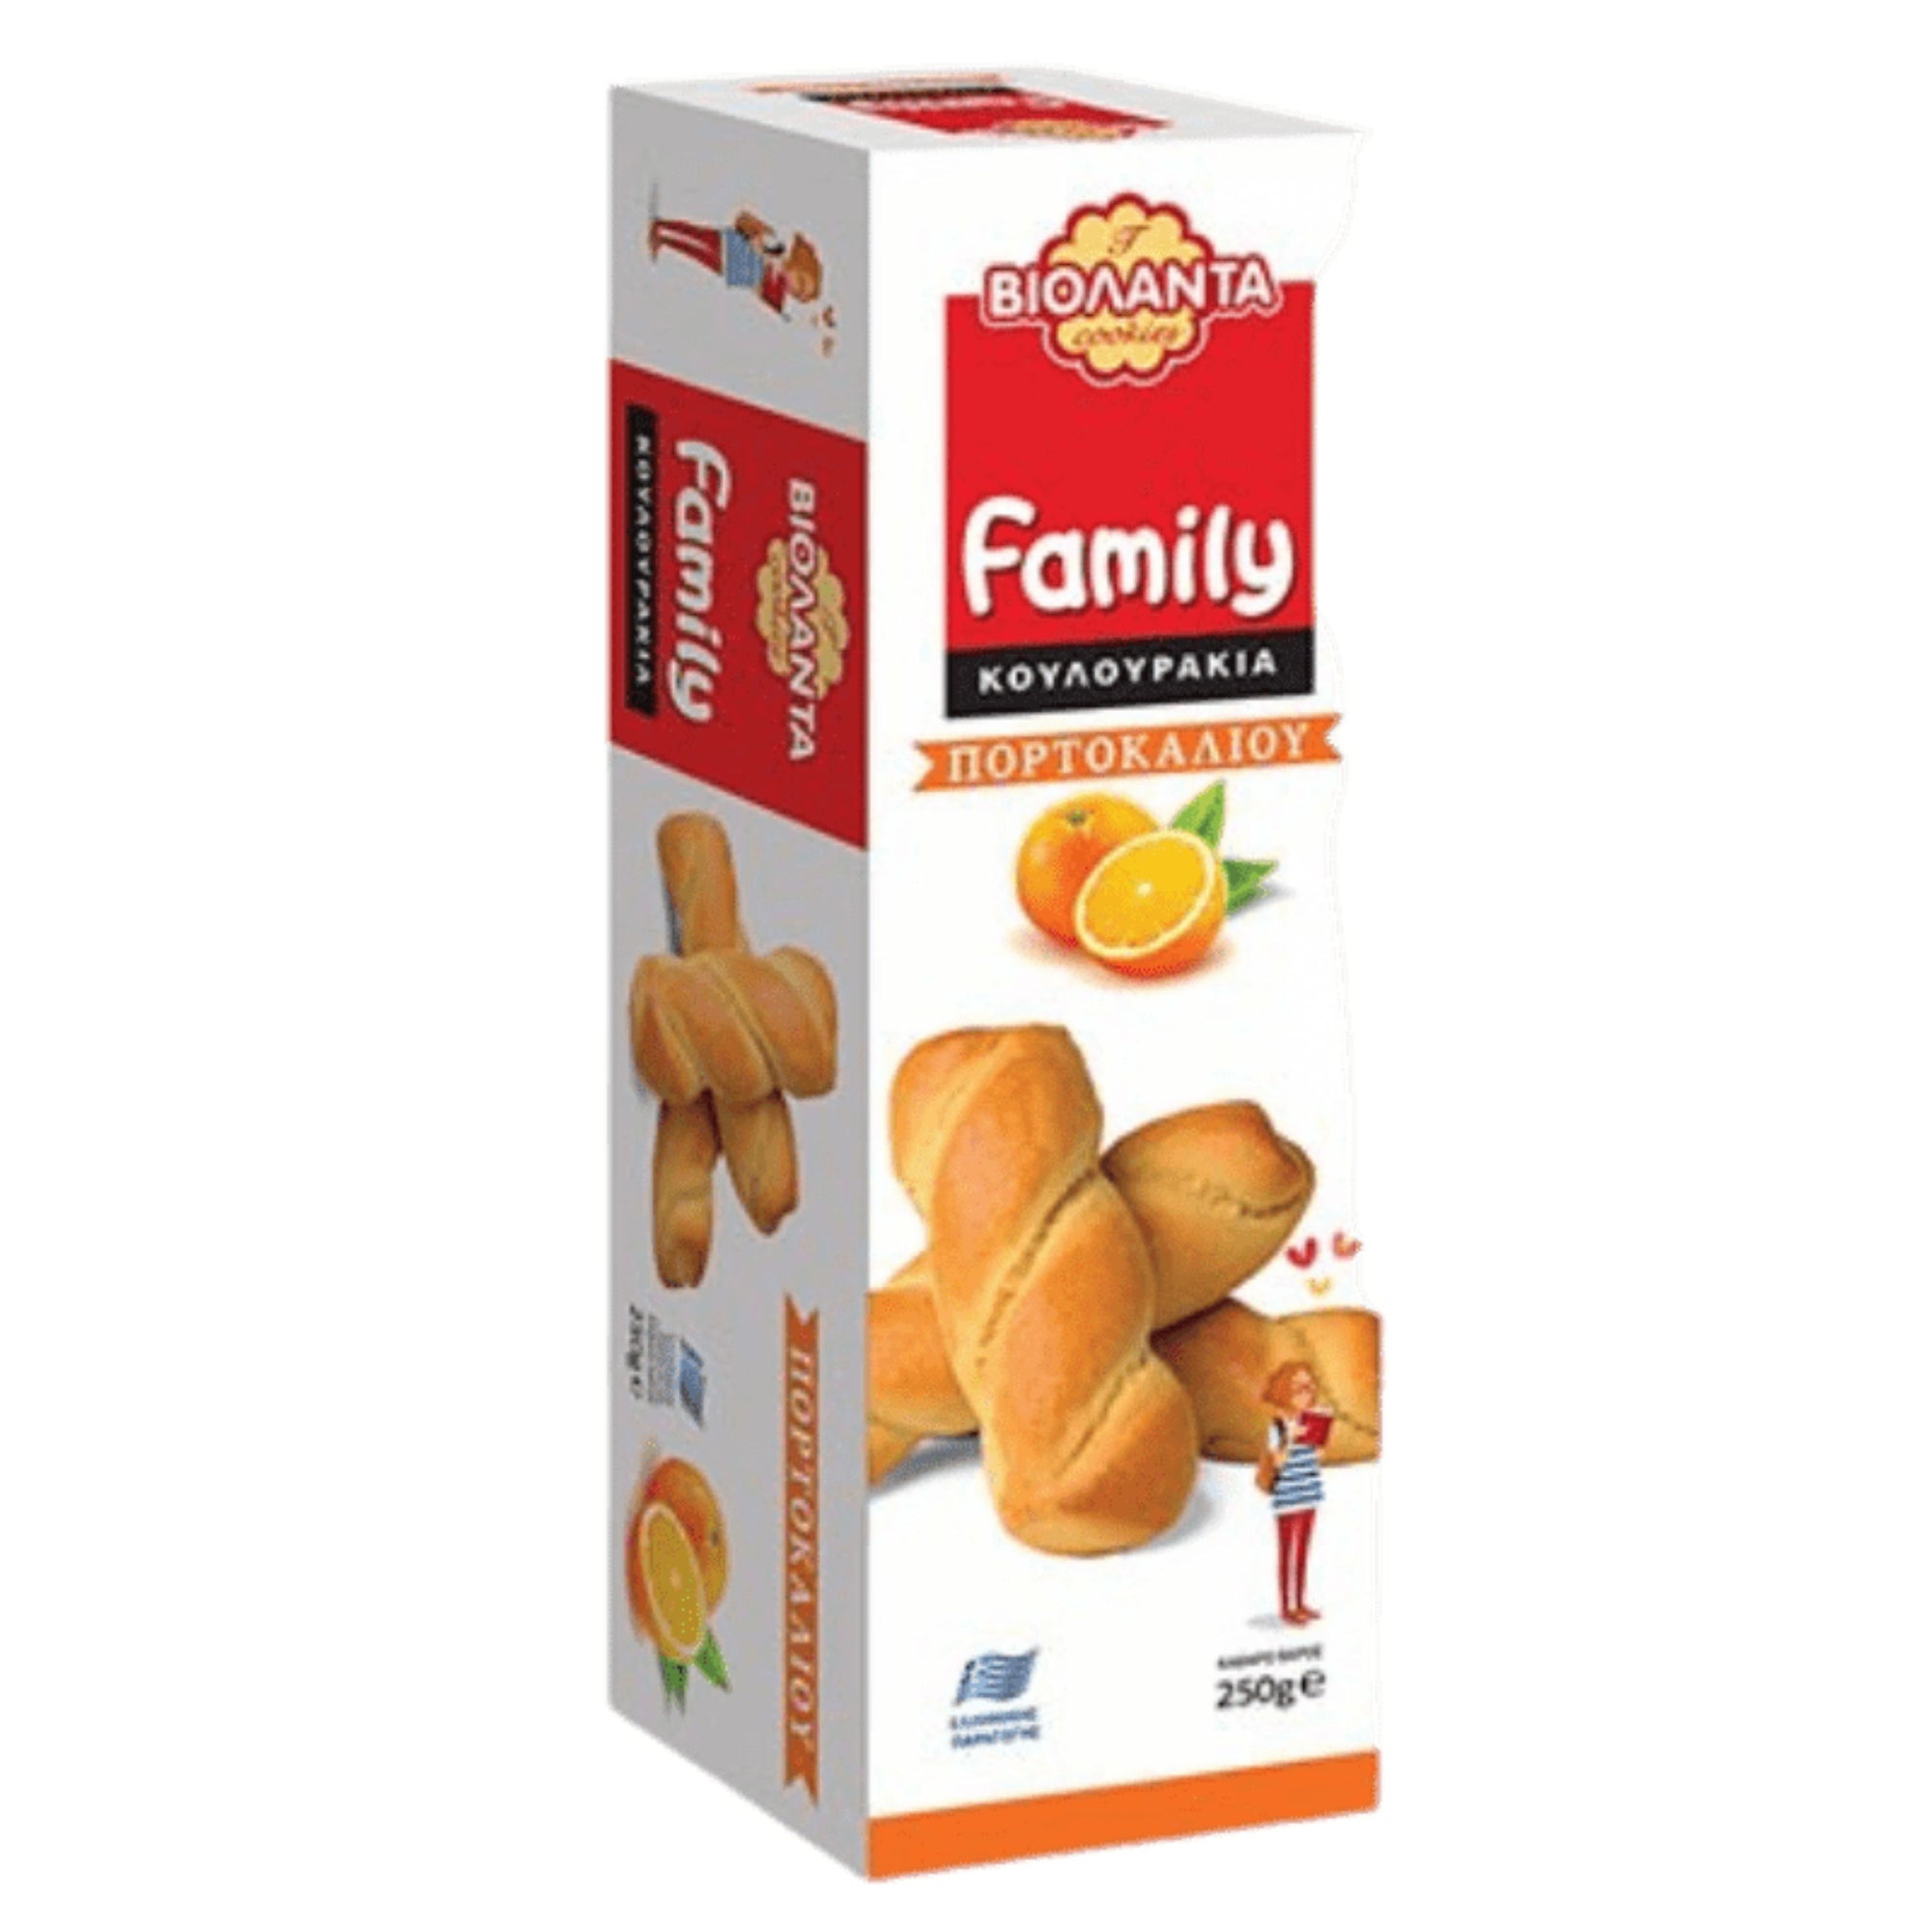 Family Cookies Orange 250g